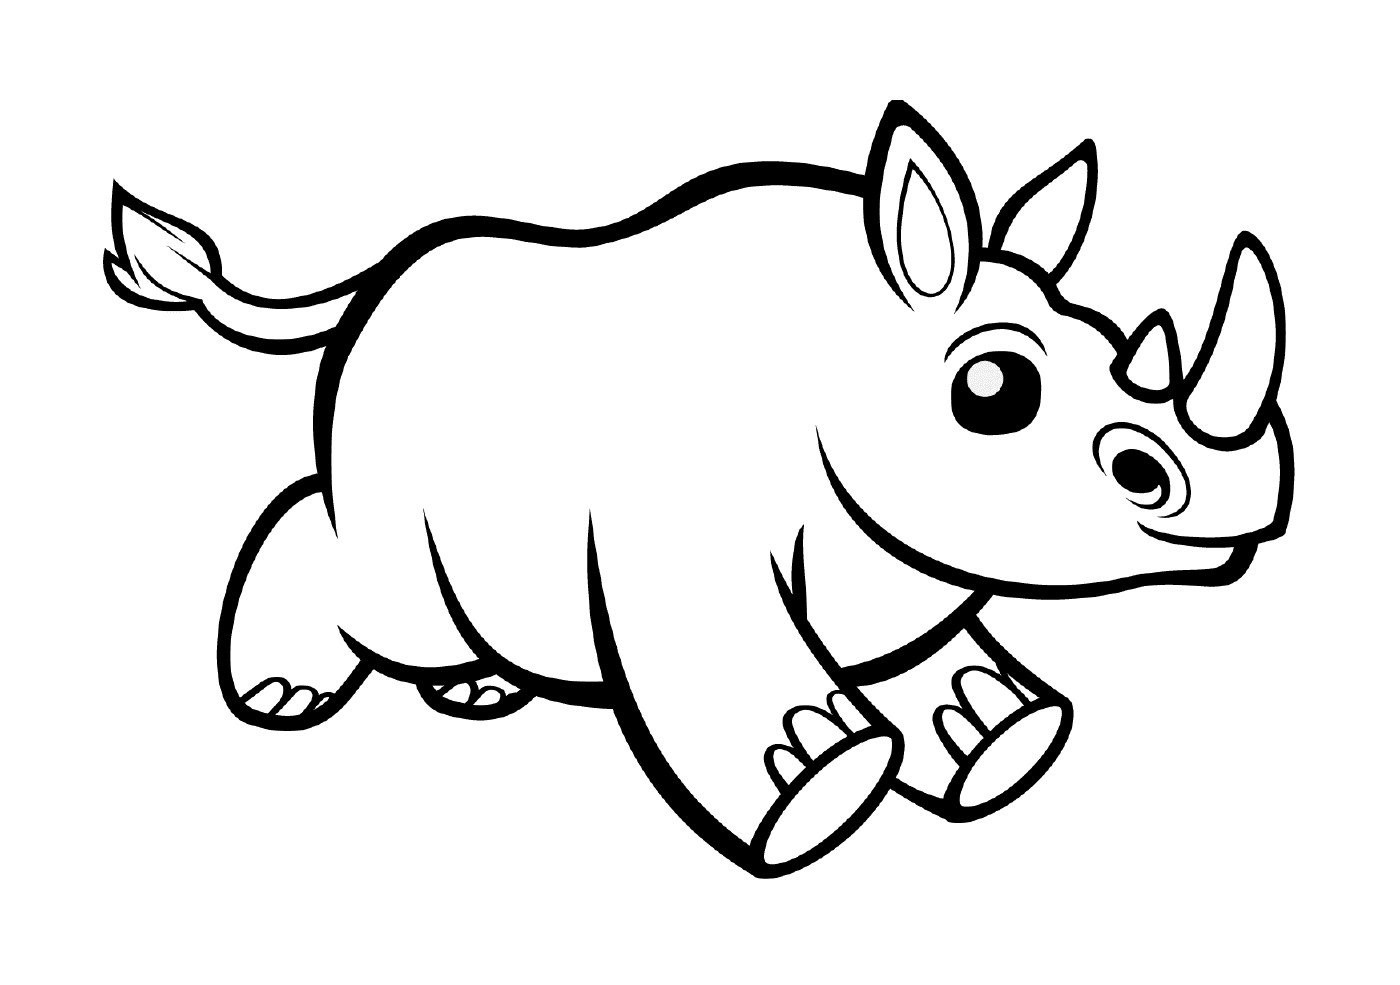  Un animale simile a un rinoceronte 